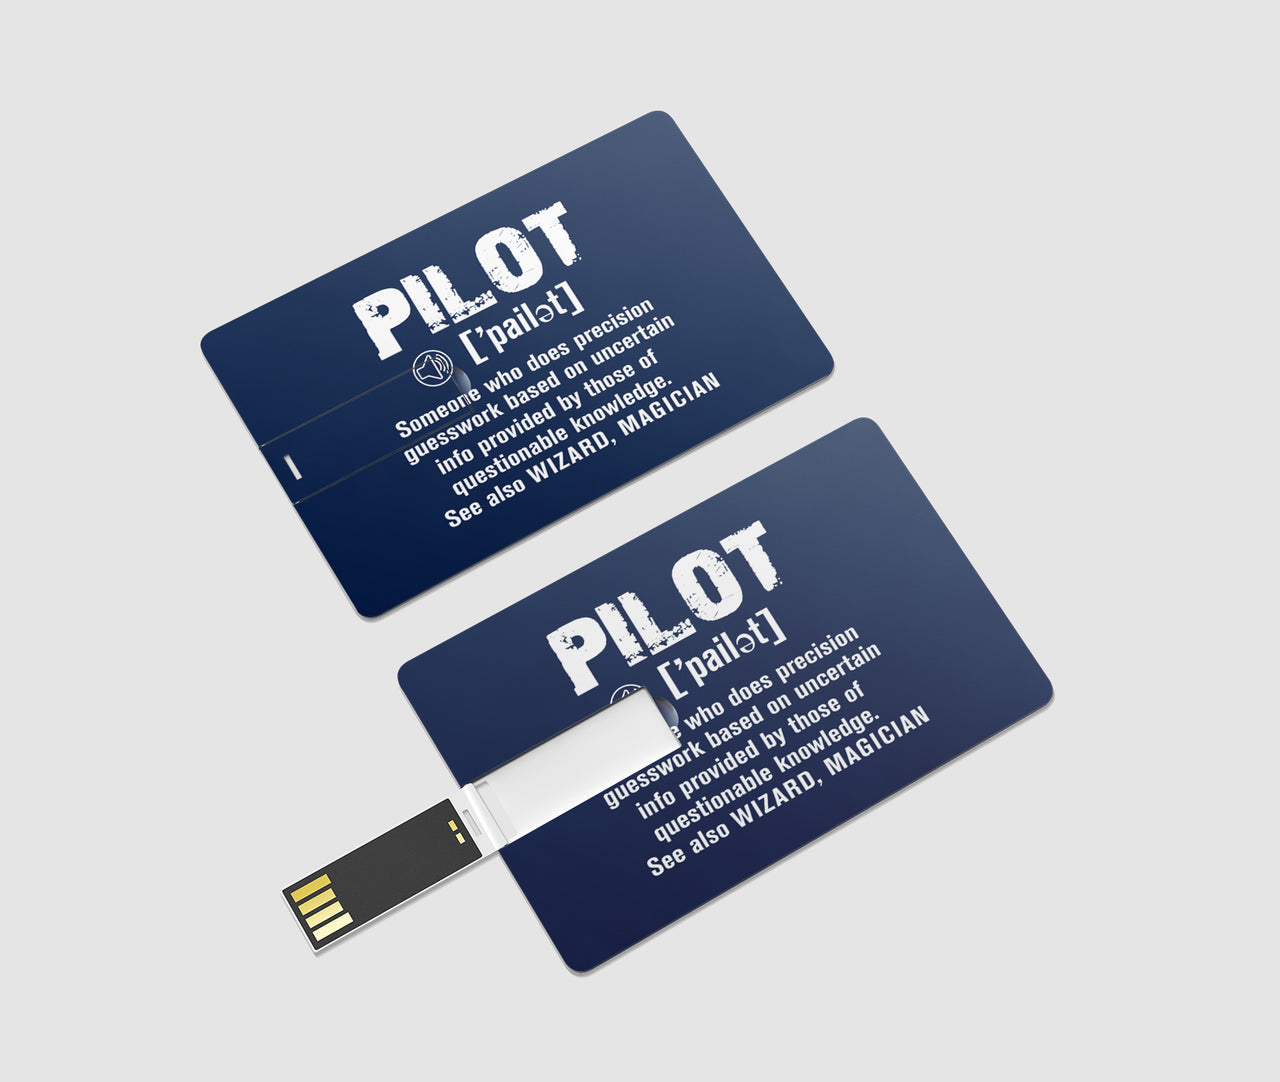 Pilot [Noun] Designed USB Cards